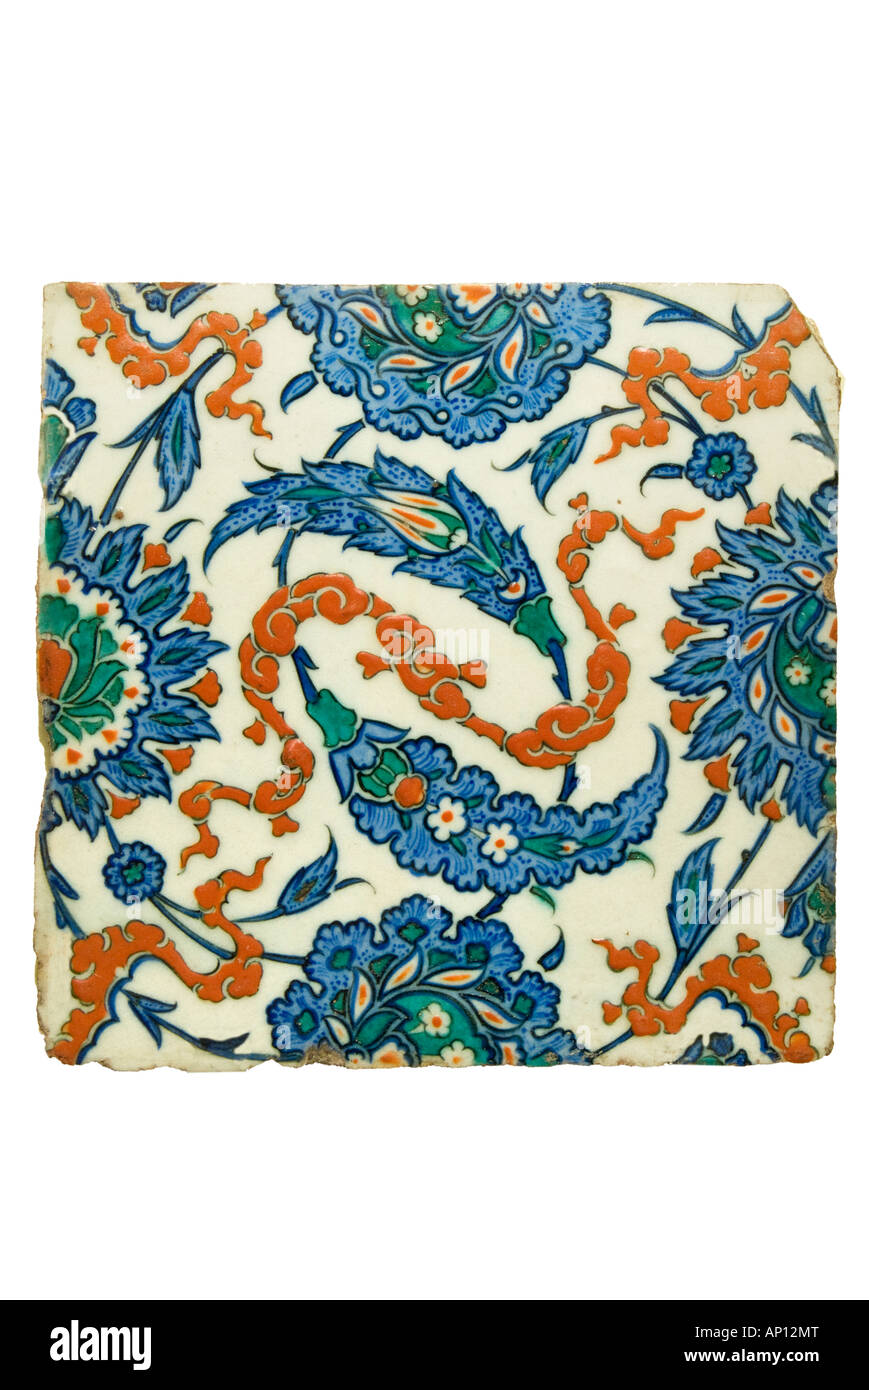 Iznik Turquía del siglo XVI motif floral 16 17 siglo Turquía iznic alfarería policromada pot jarra cerámica Foto de stock